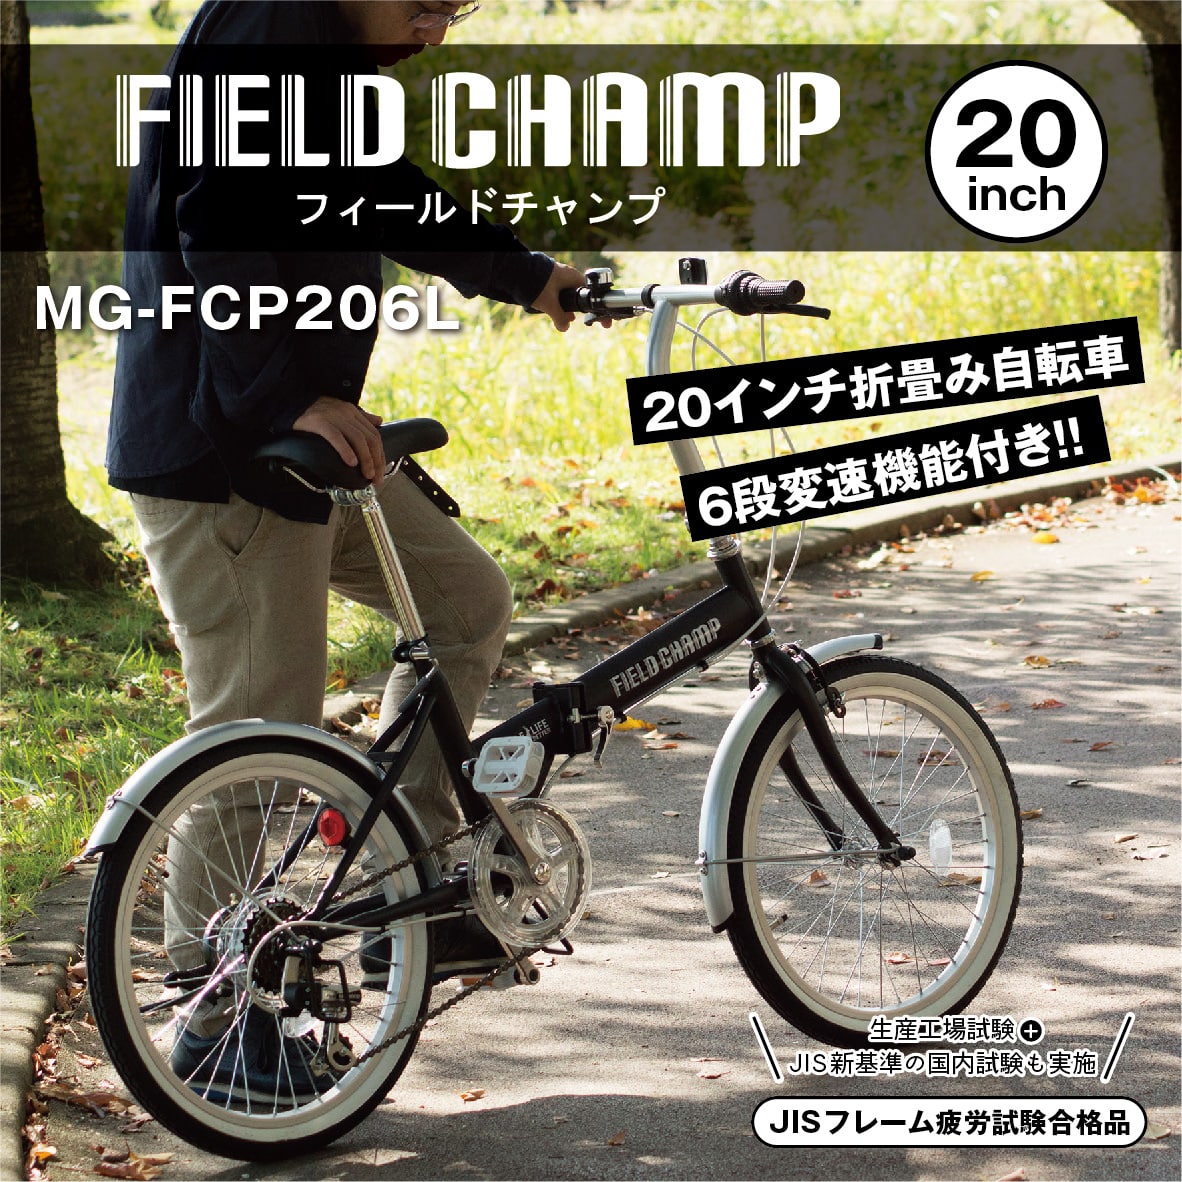 [直送5]フィールドチャンプ FDB206SL MG-FCP206L ブラック(マット)